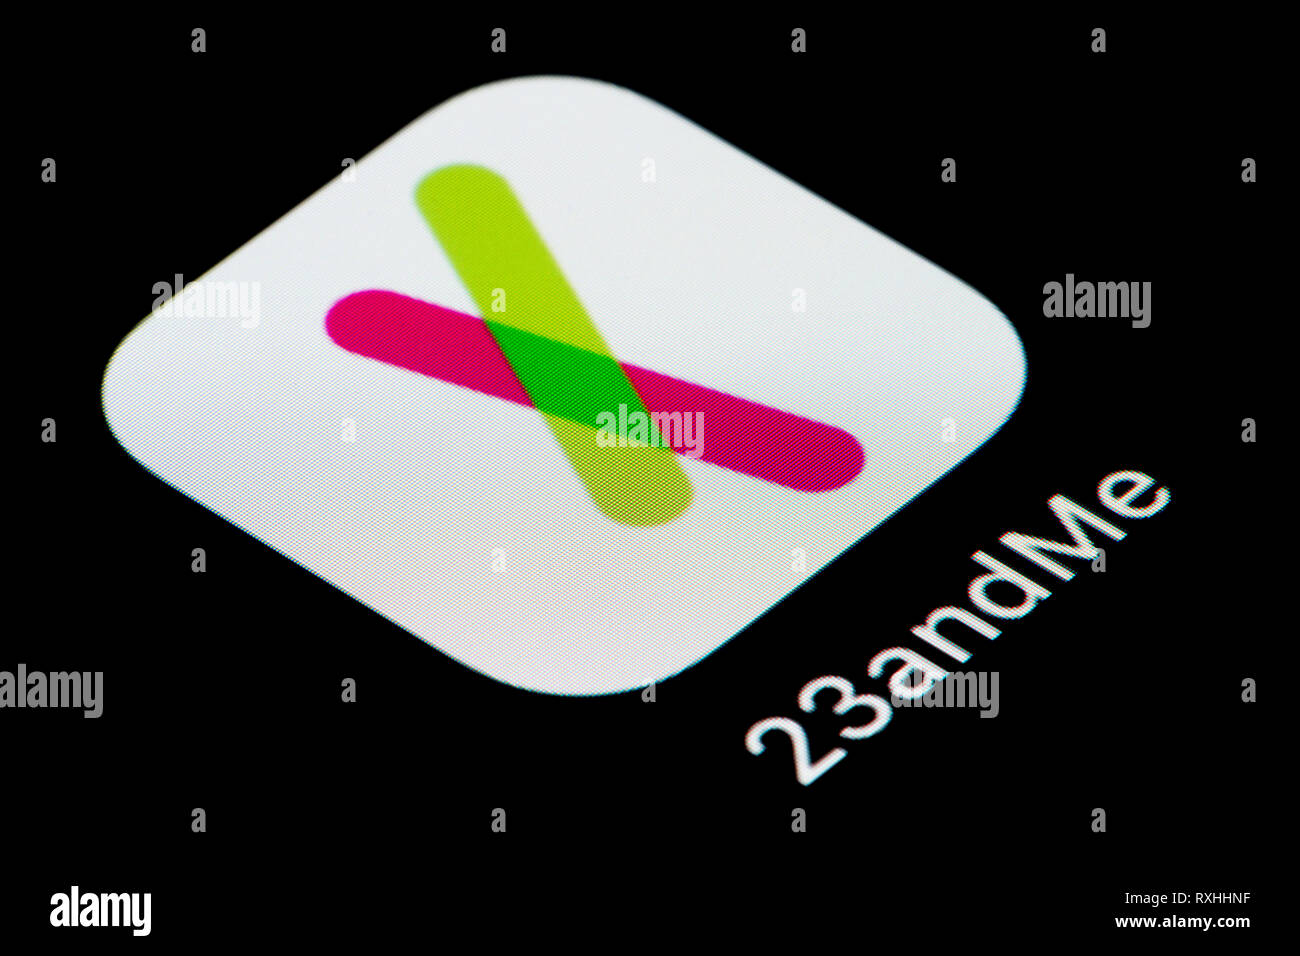 Eine Nahaufnahme der 23andMe App Symbol, wie auf dem Bildschirm eines Smartphones (nur redaktionelle Nutzung) Stockfoto